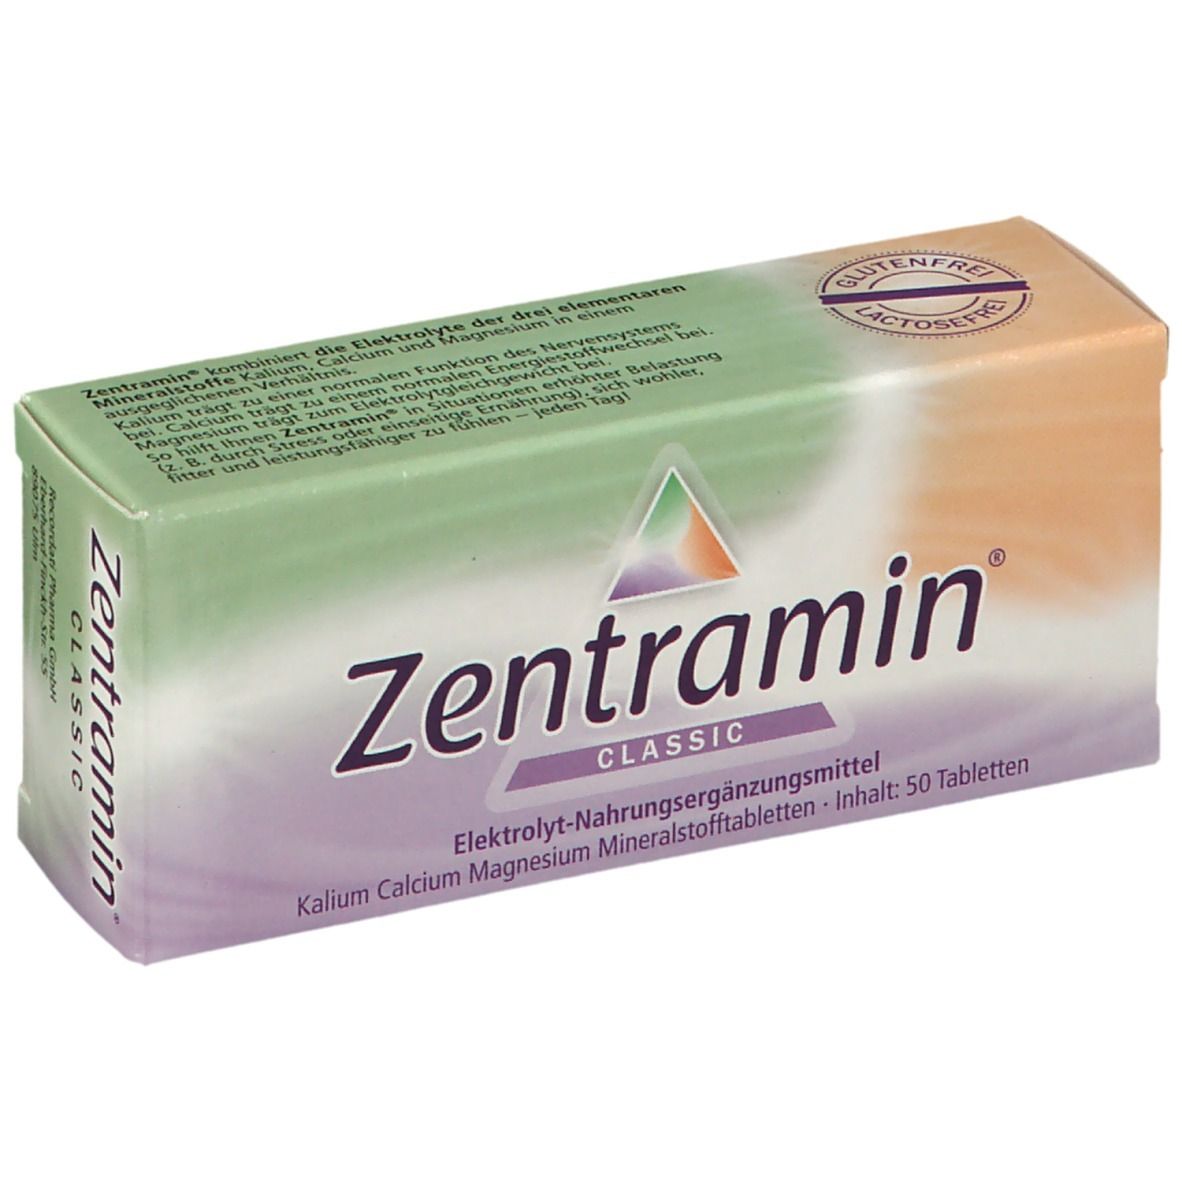 Image of Zentramin® classic Tabletten